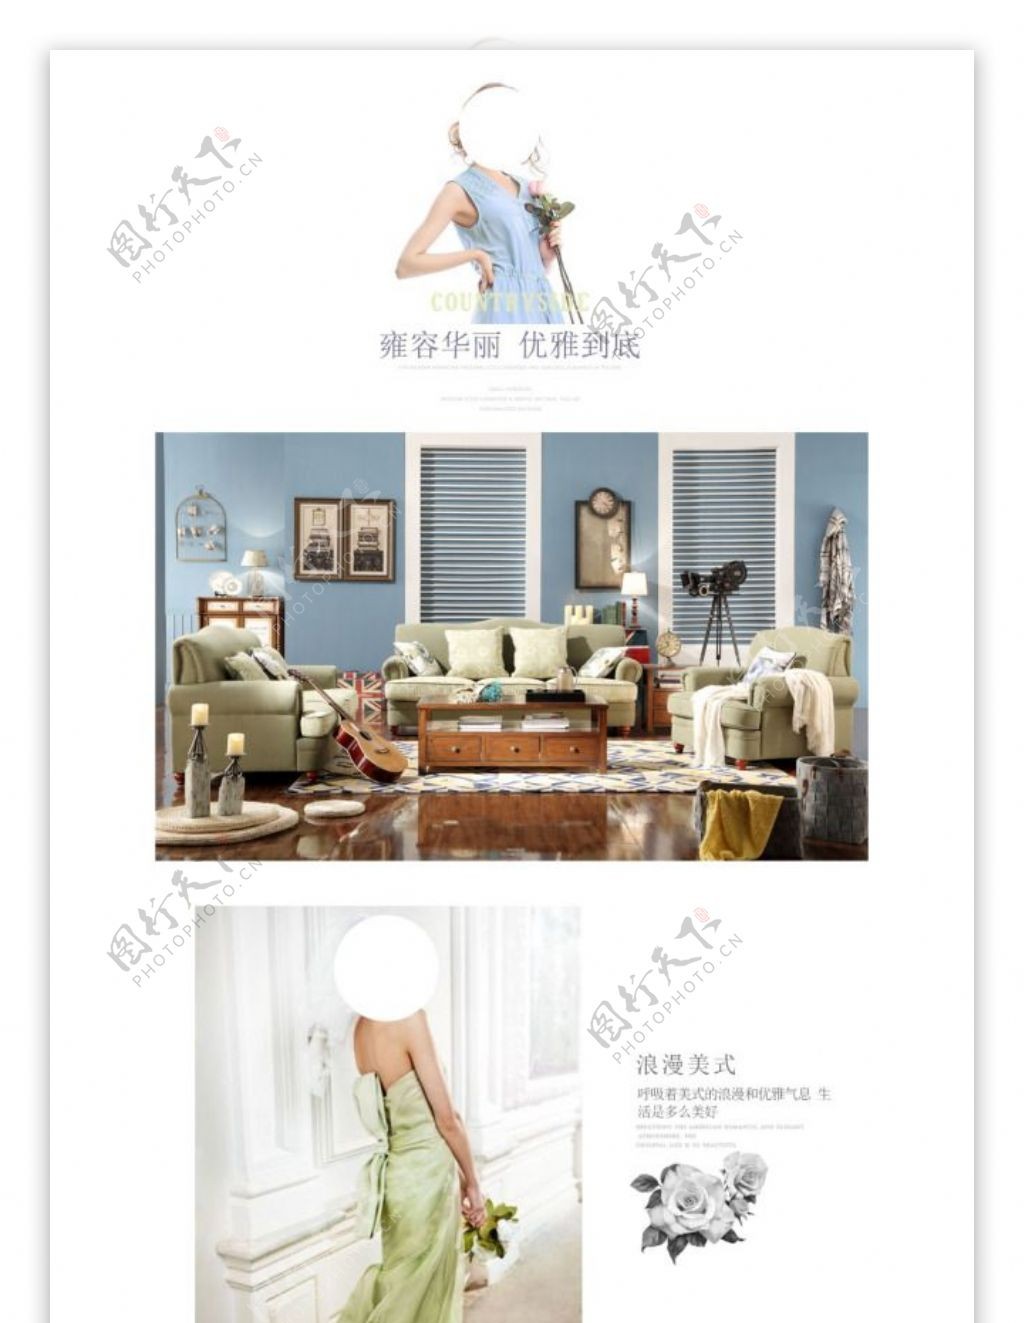 淘宝天猫家具详情沙发描述美式布艺沙发